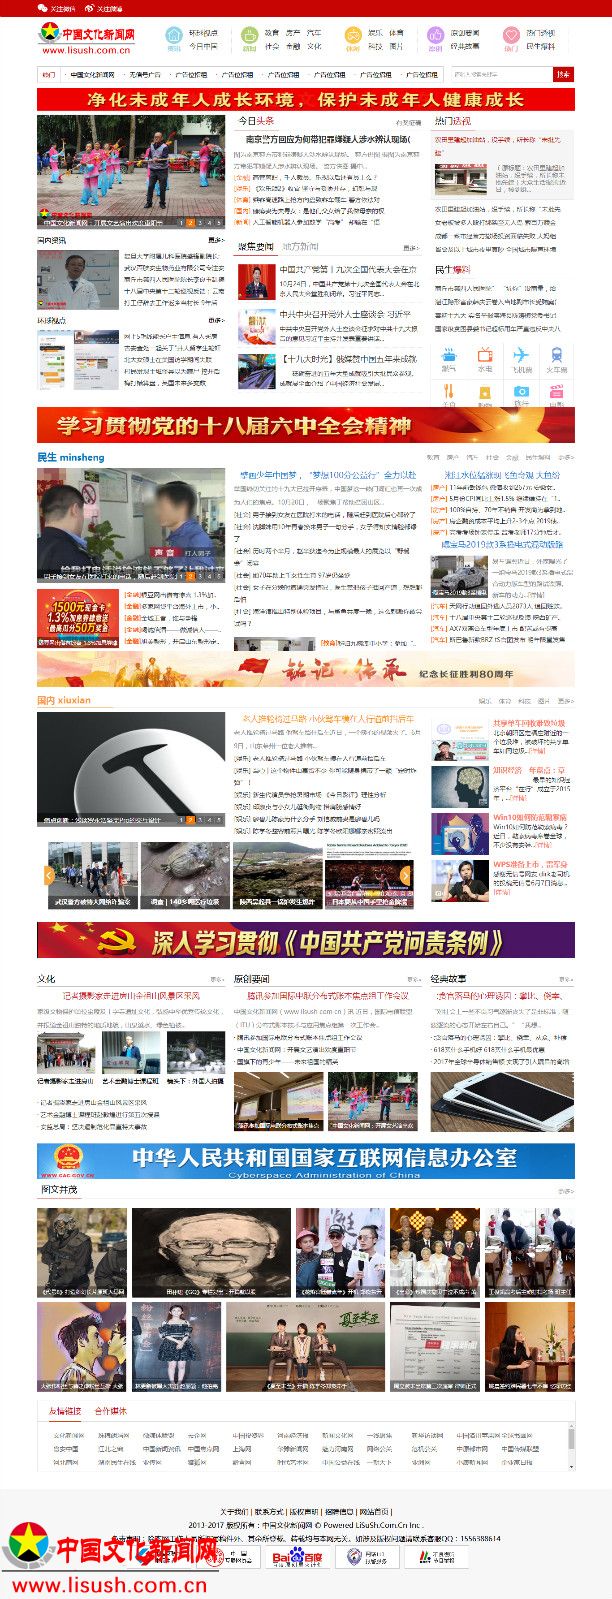 中国文化新闻网站新版首页正式上线